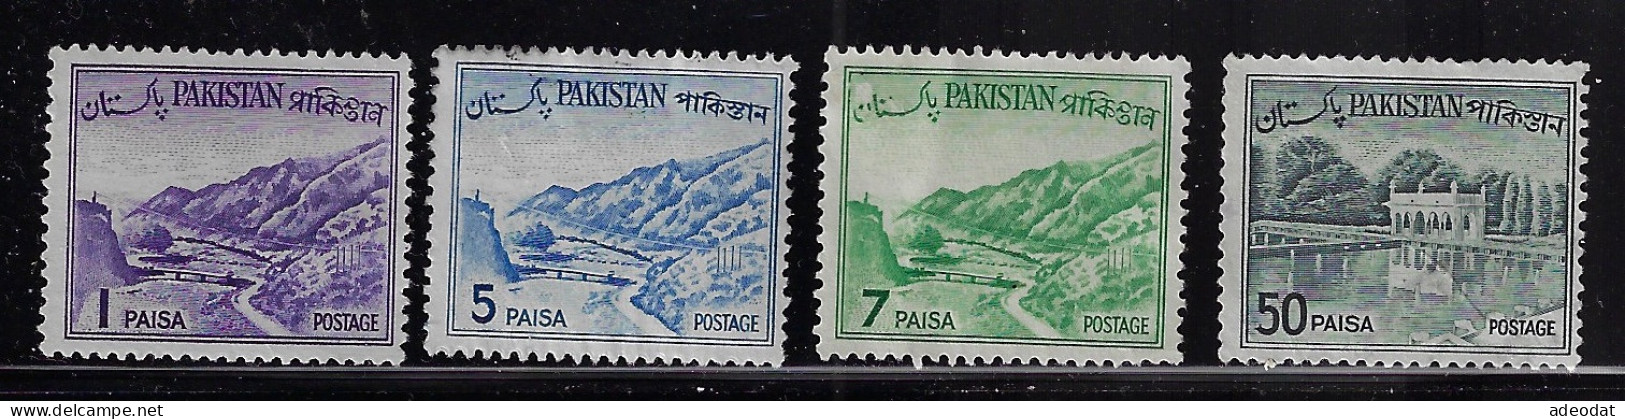 PAKISTAN  1961   SCOTT #129,132,133,138  MH  CV $6.40 - Pakistán